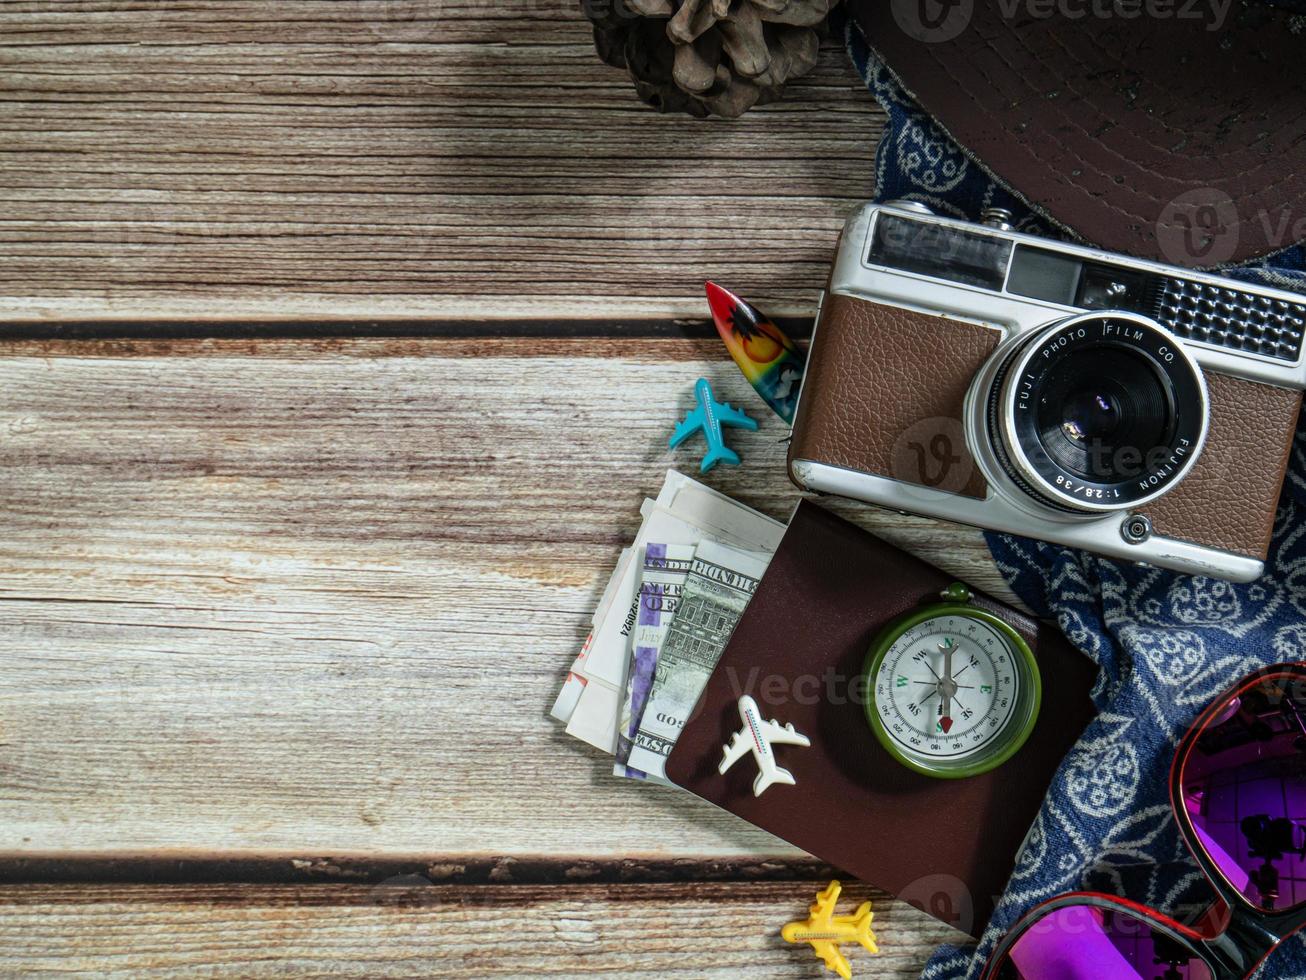 camera en paspoort op houten tafel voor reisconcept. foto